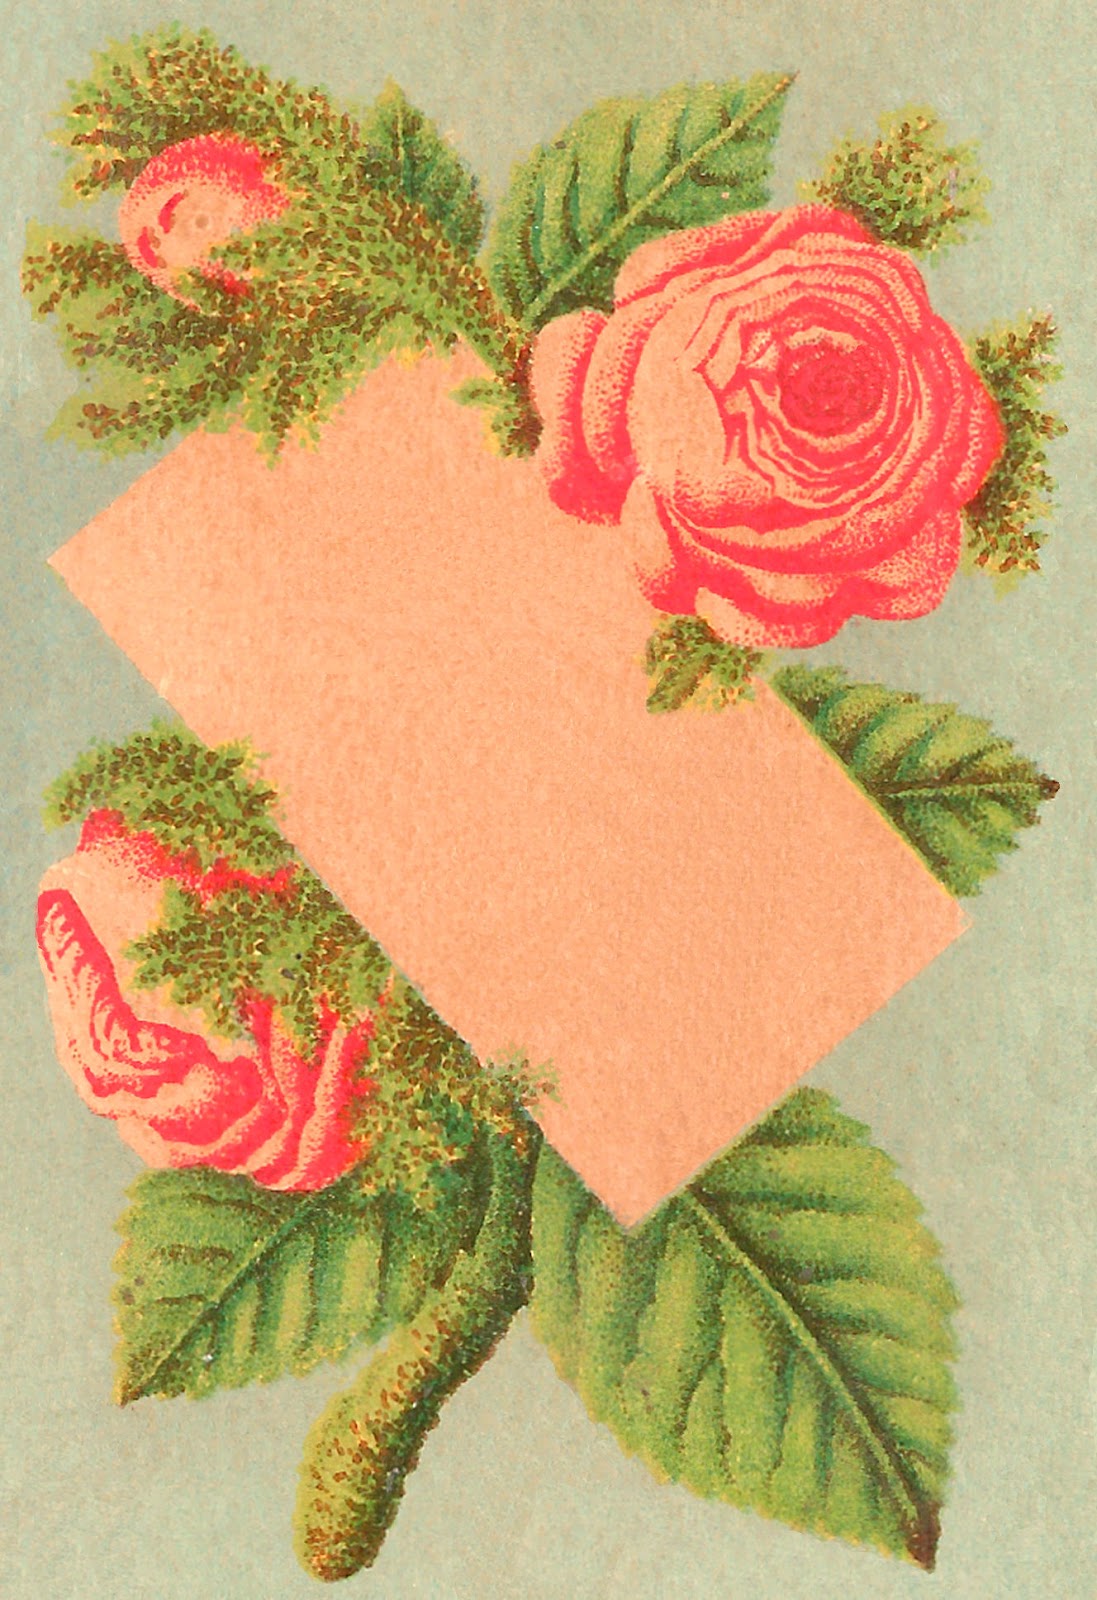 antique-images-printable-blank-rose-flower-note-card-label-design